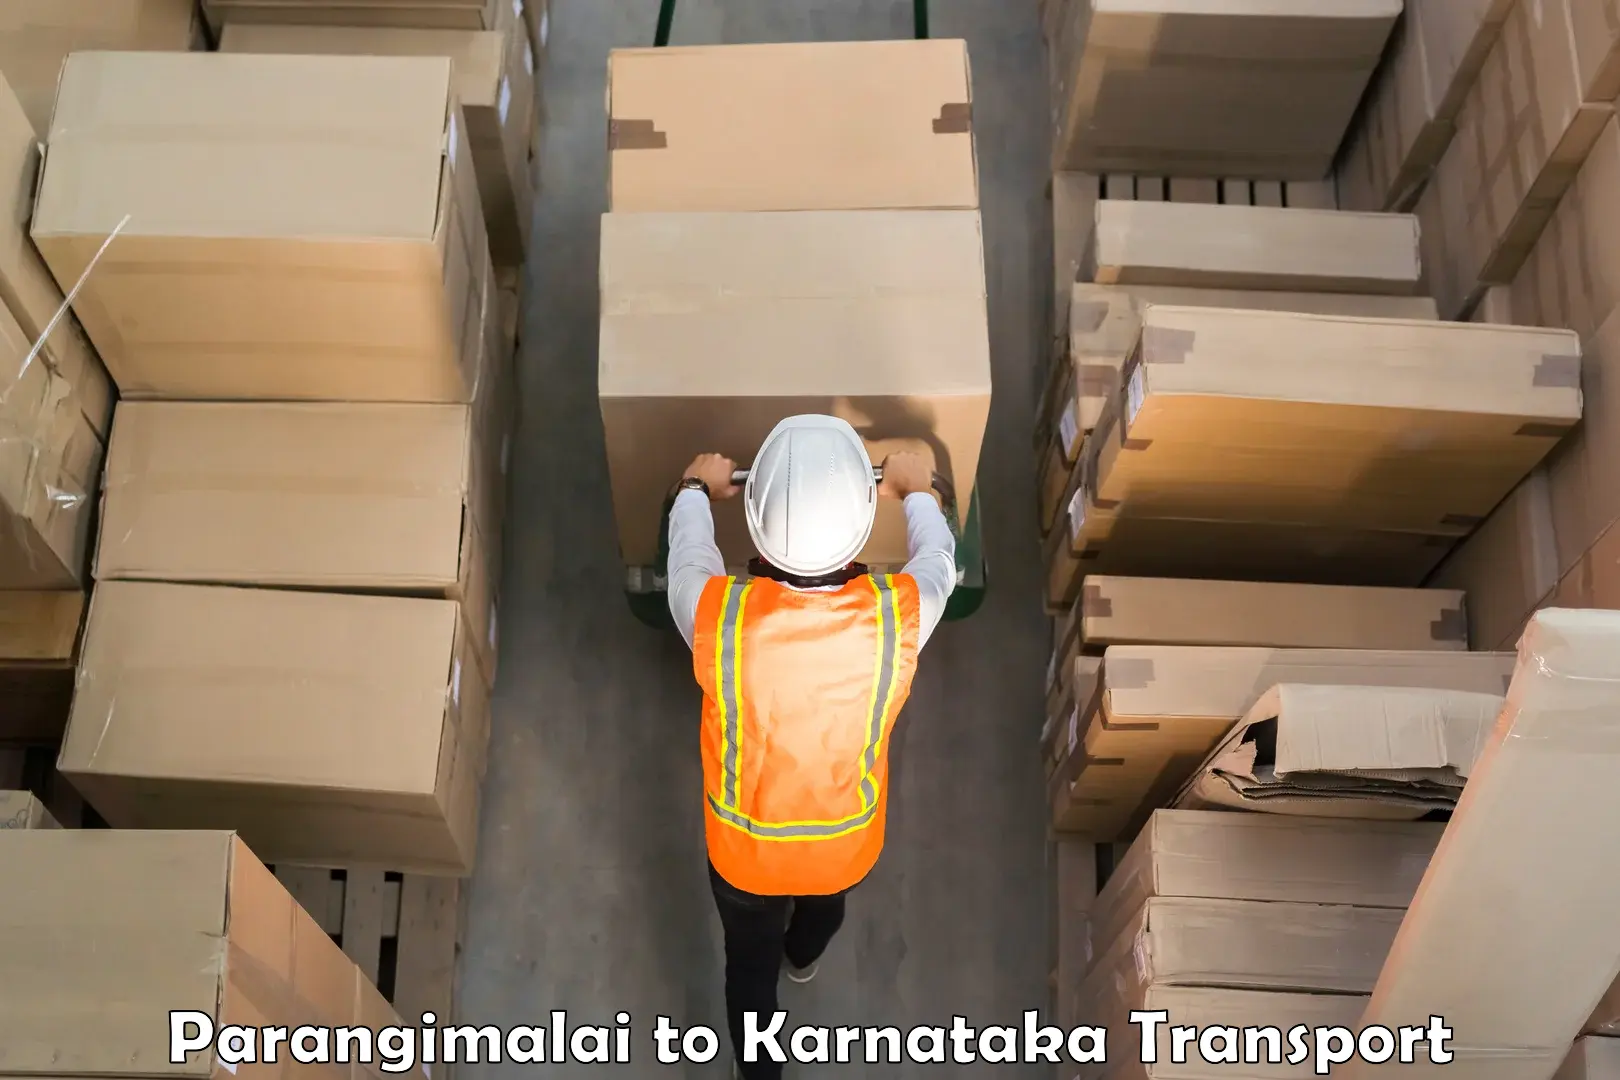 Container transport service Parangimalai to Gurmatkal